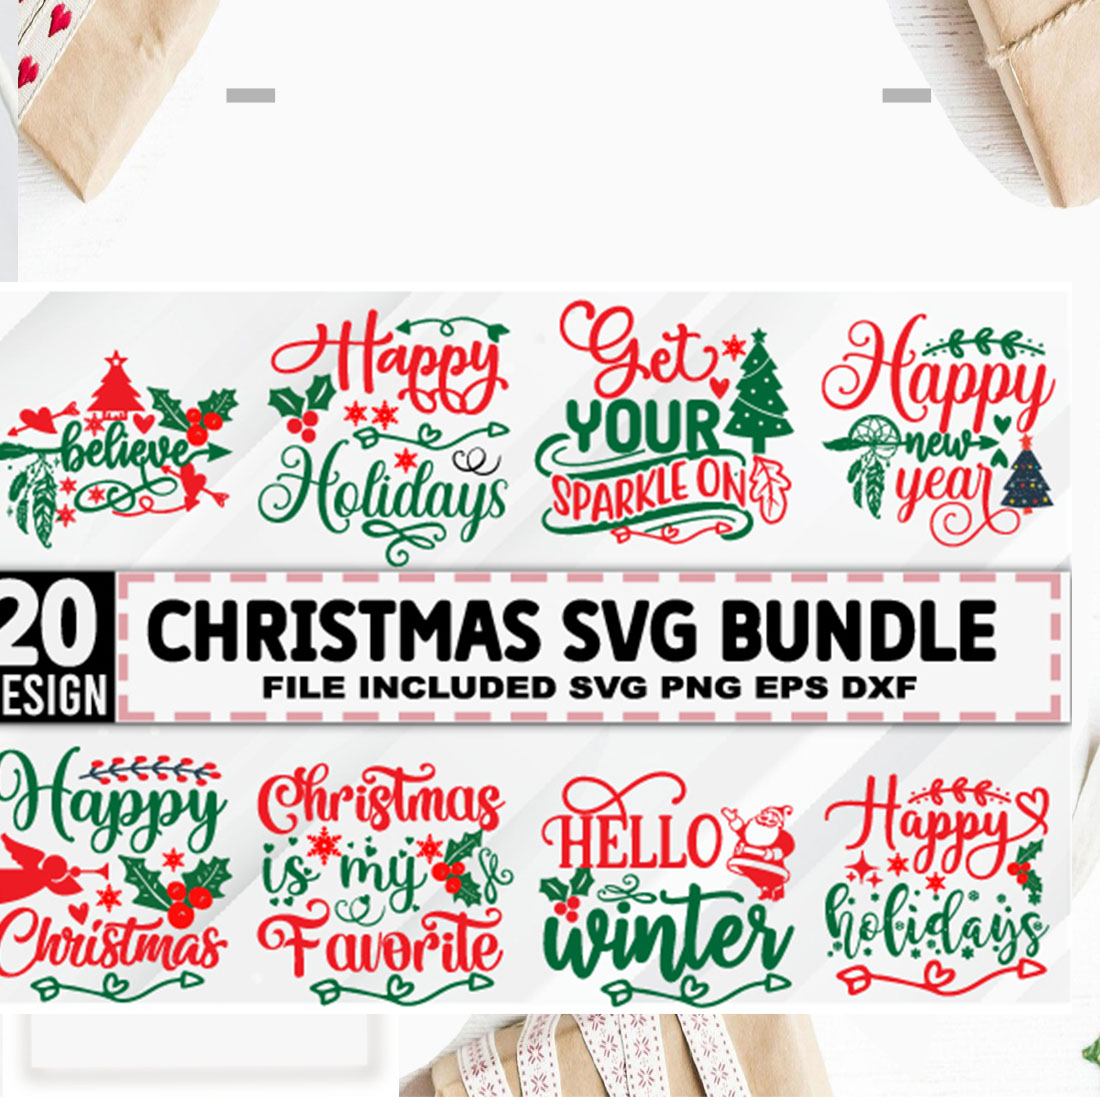 Big SVG Bundle with 20 Christmas designs.